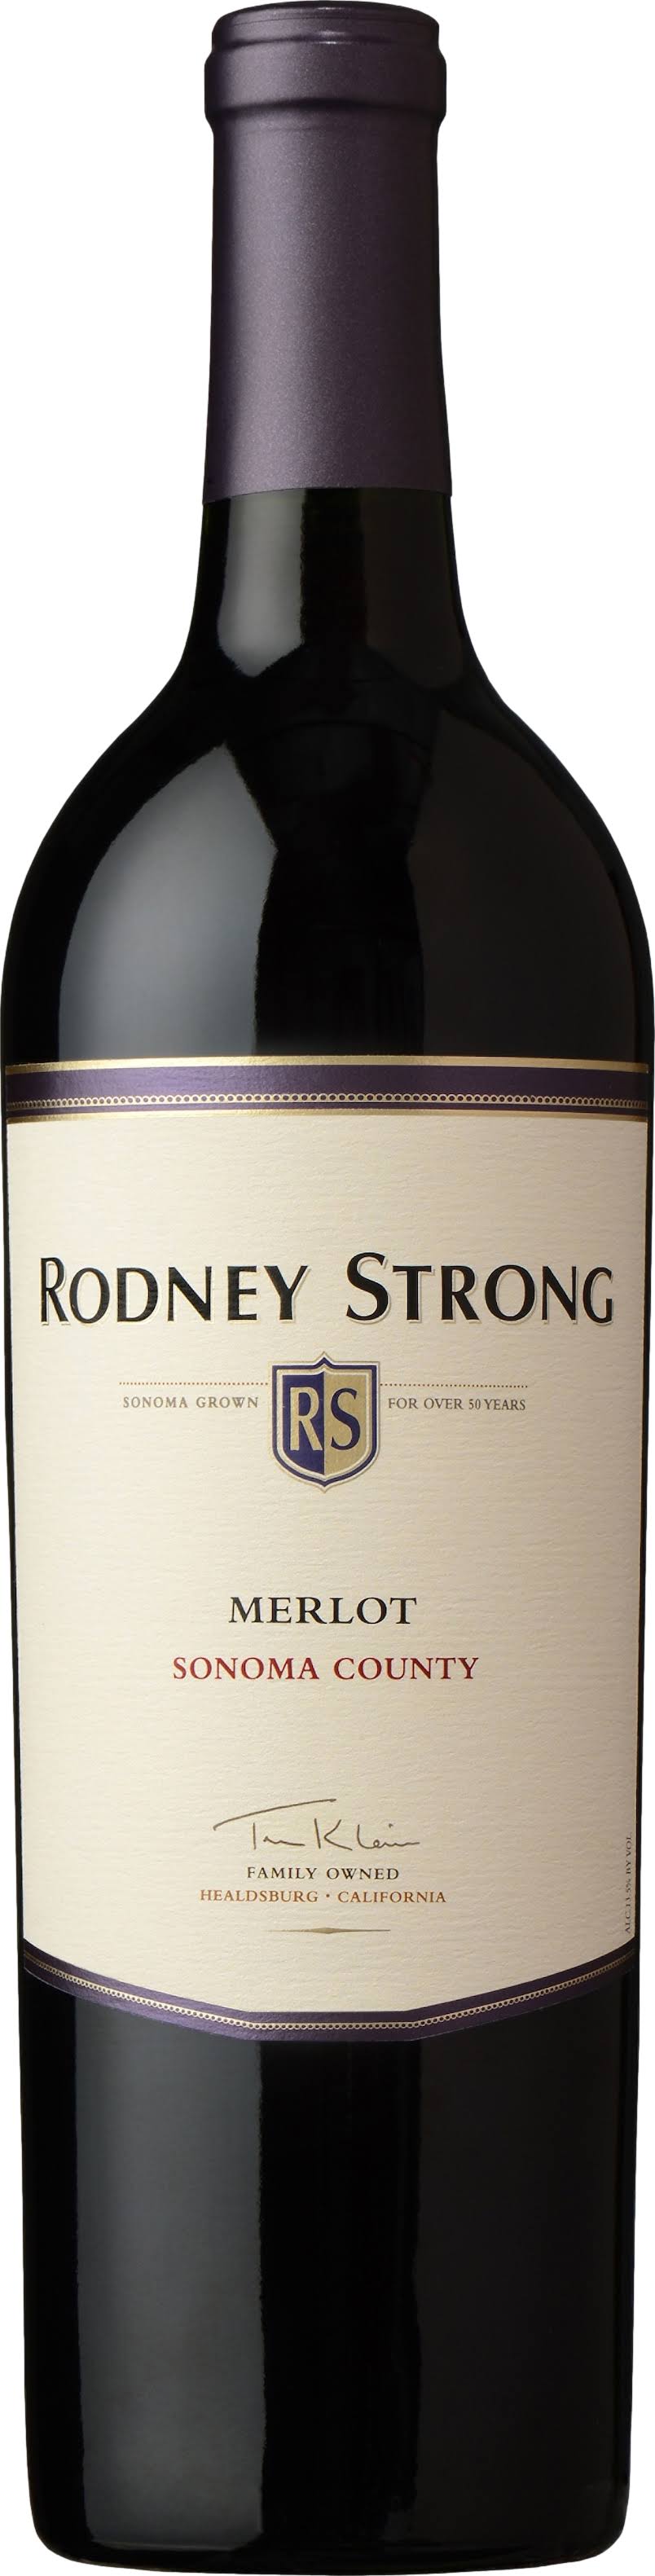 Rodney Strong Merlot - Sonoma County, 2009